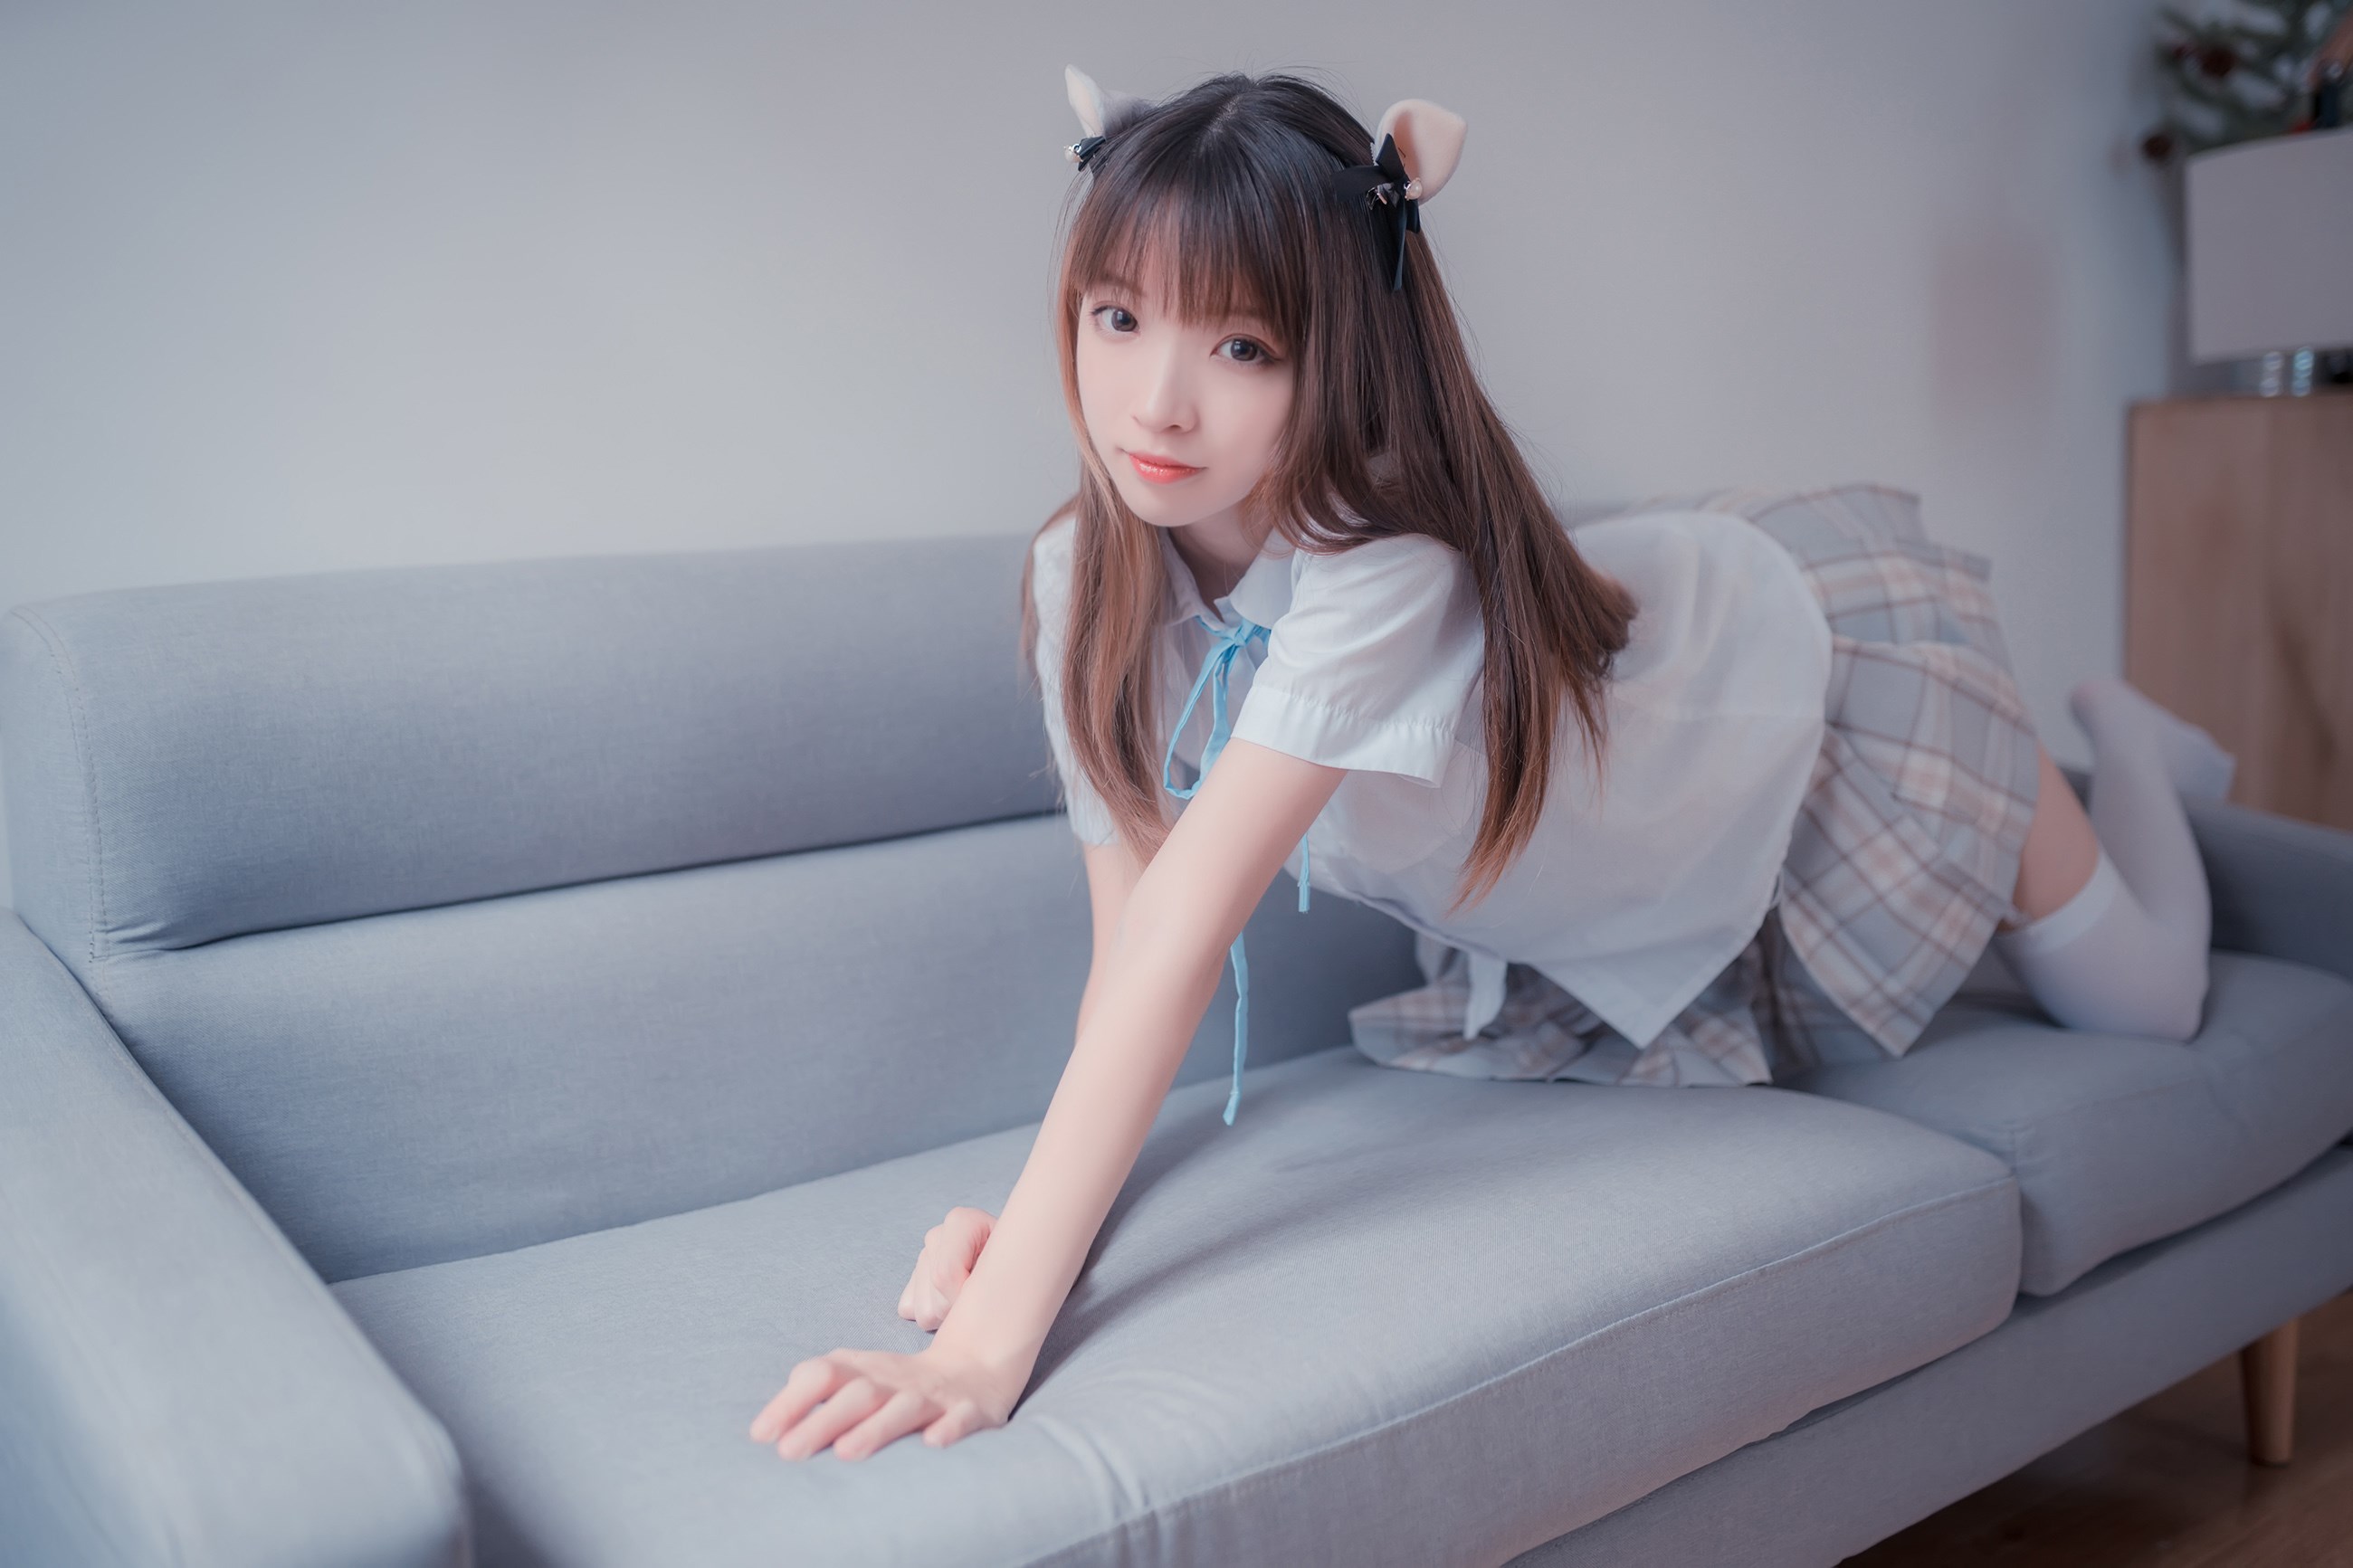 【兔玩映画】沙发上的JK少女 兔玩映画 第6张